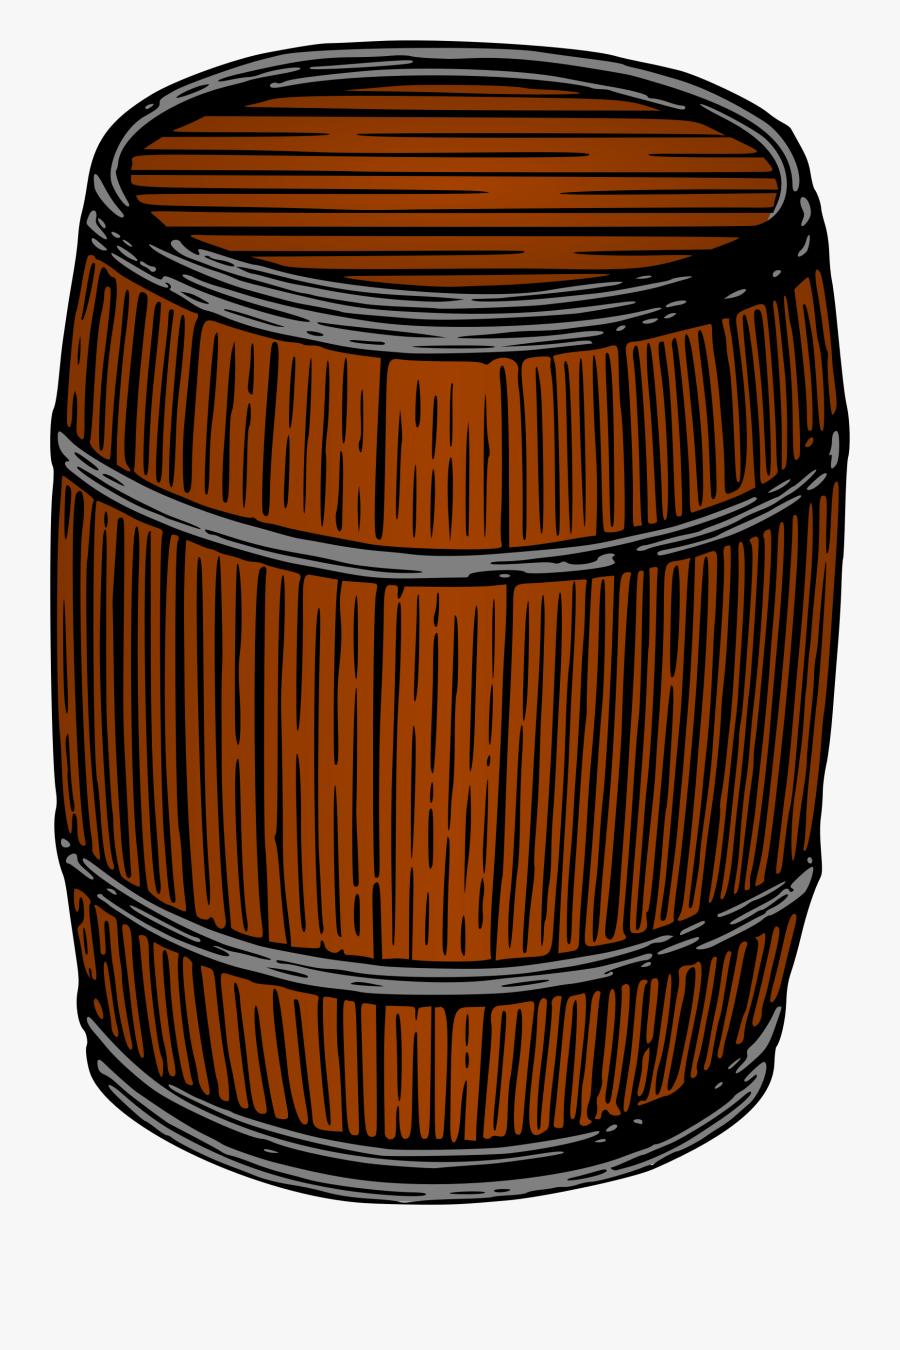 Barrel - Keg Clipart, Transparent Clipart